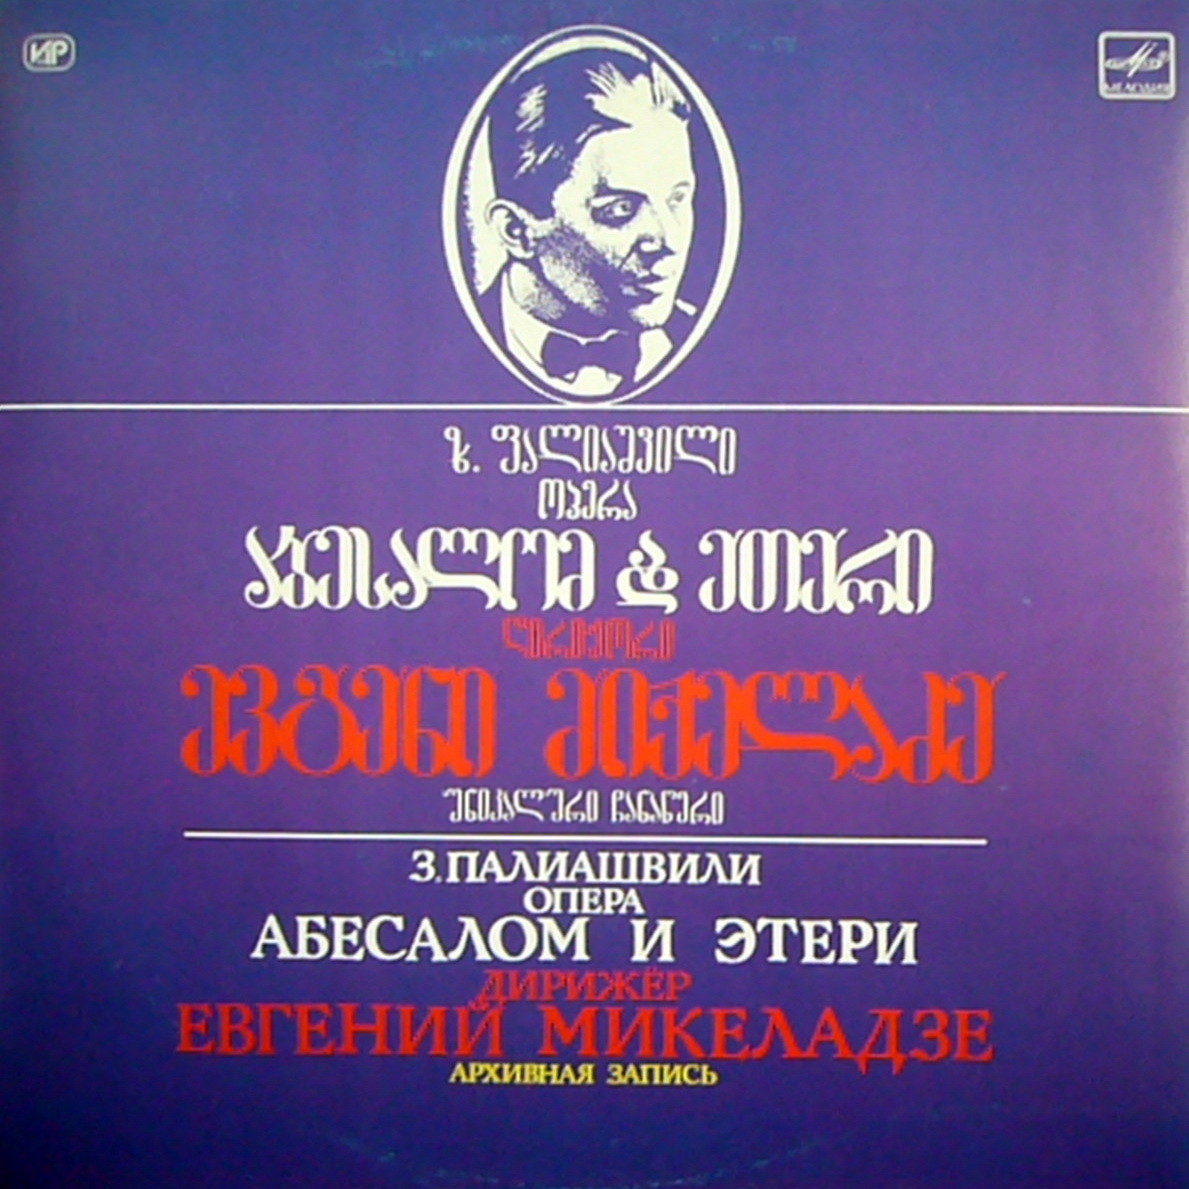 З. ПАЛИАШВИЛИ (1871-1933): «Абесалом и Этери», опера в четырех действиях (на грузинском яз.)